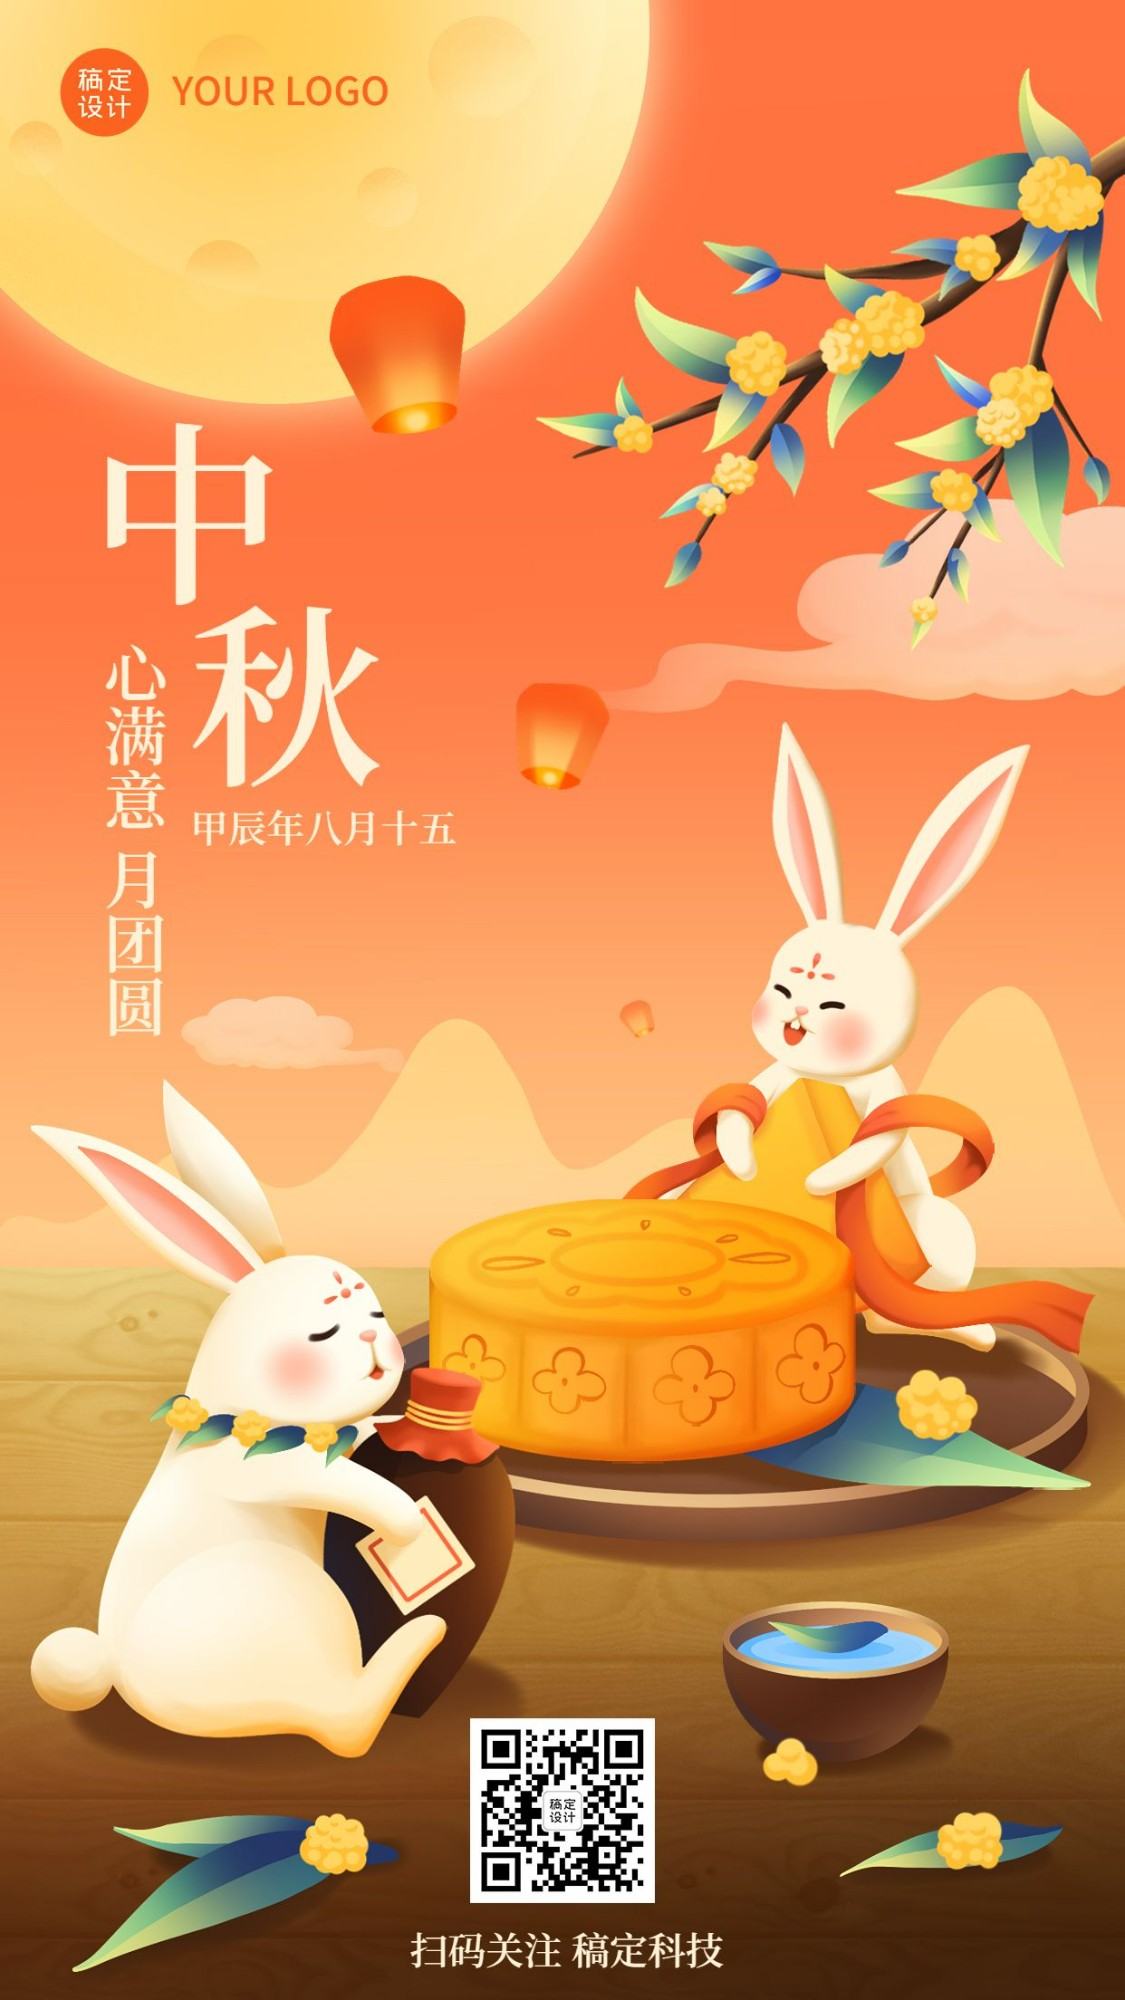 中秋节企业商务节日祝福特定风格插画手机海报